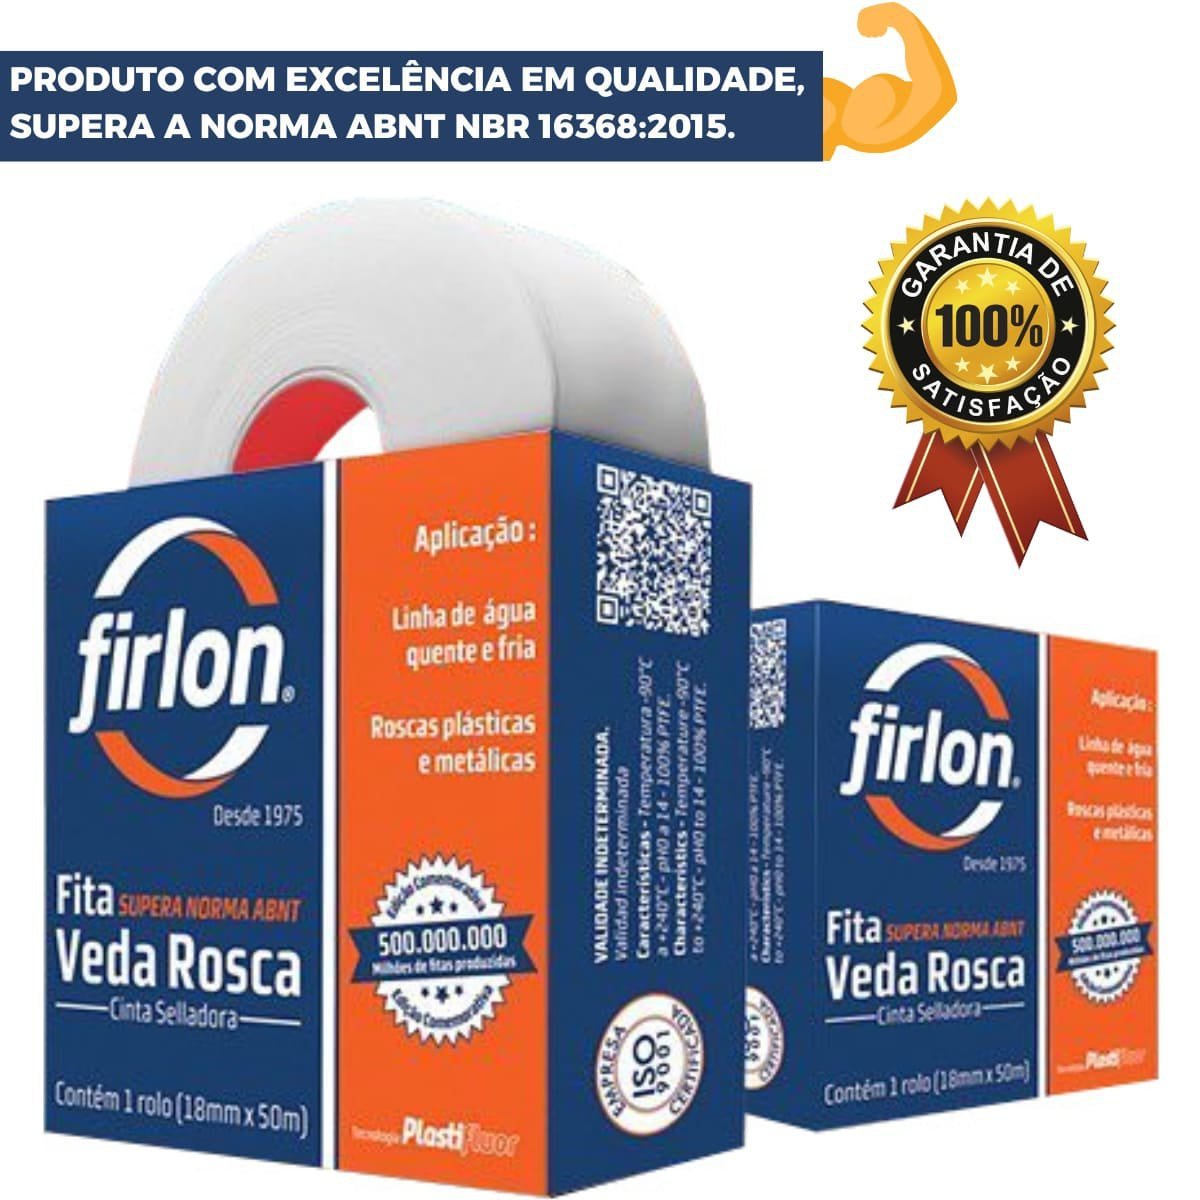 Fita Veda Rosca Teflon 12mm x 10m | Firlon - 4